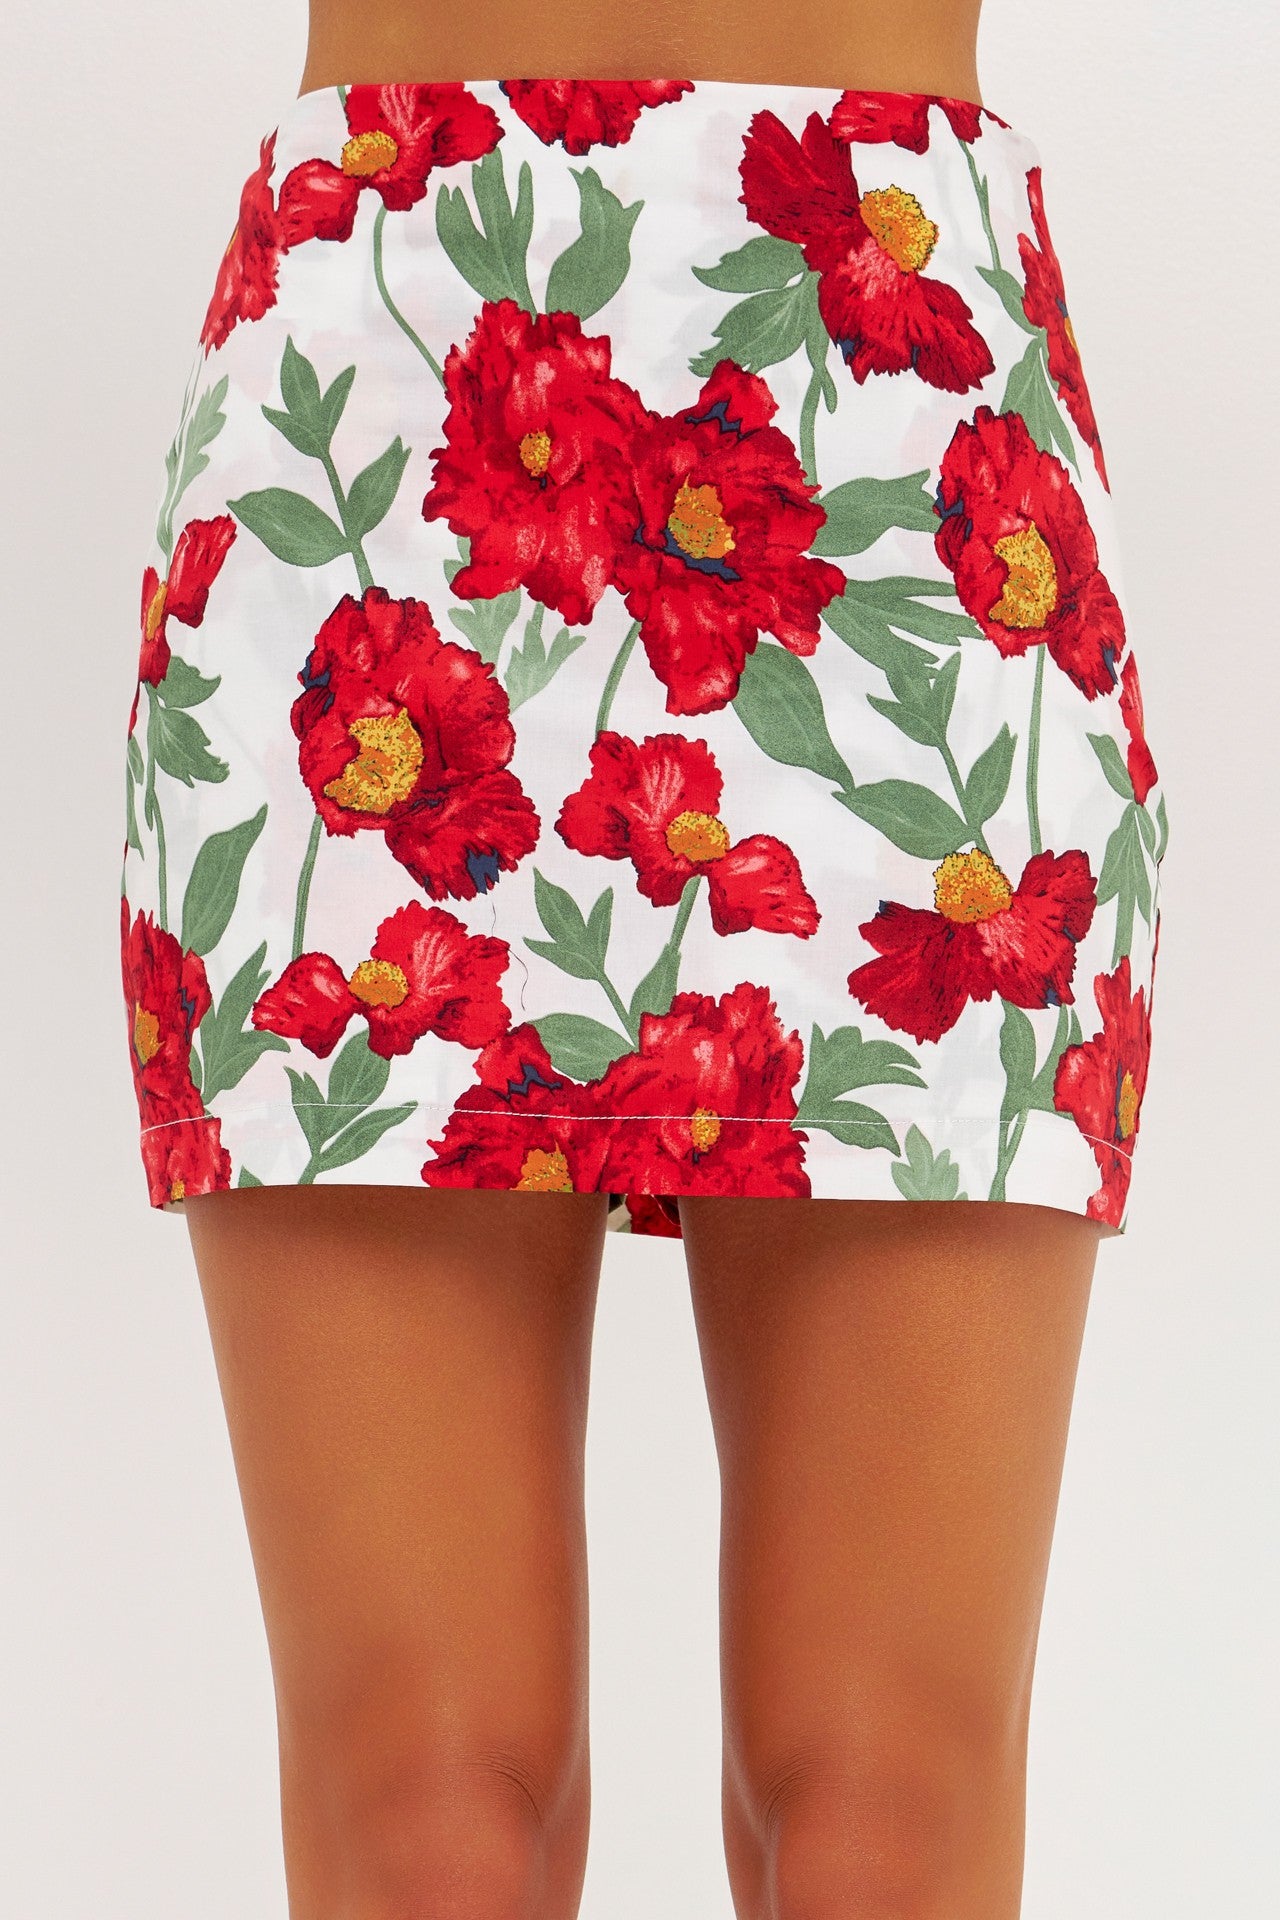 The ‘Poppy Fields Skirt’